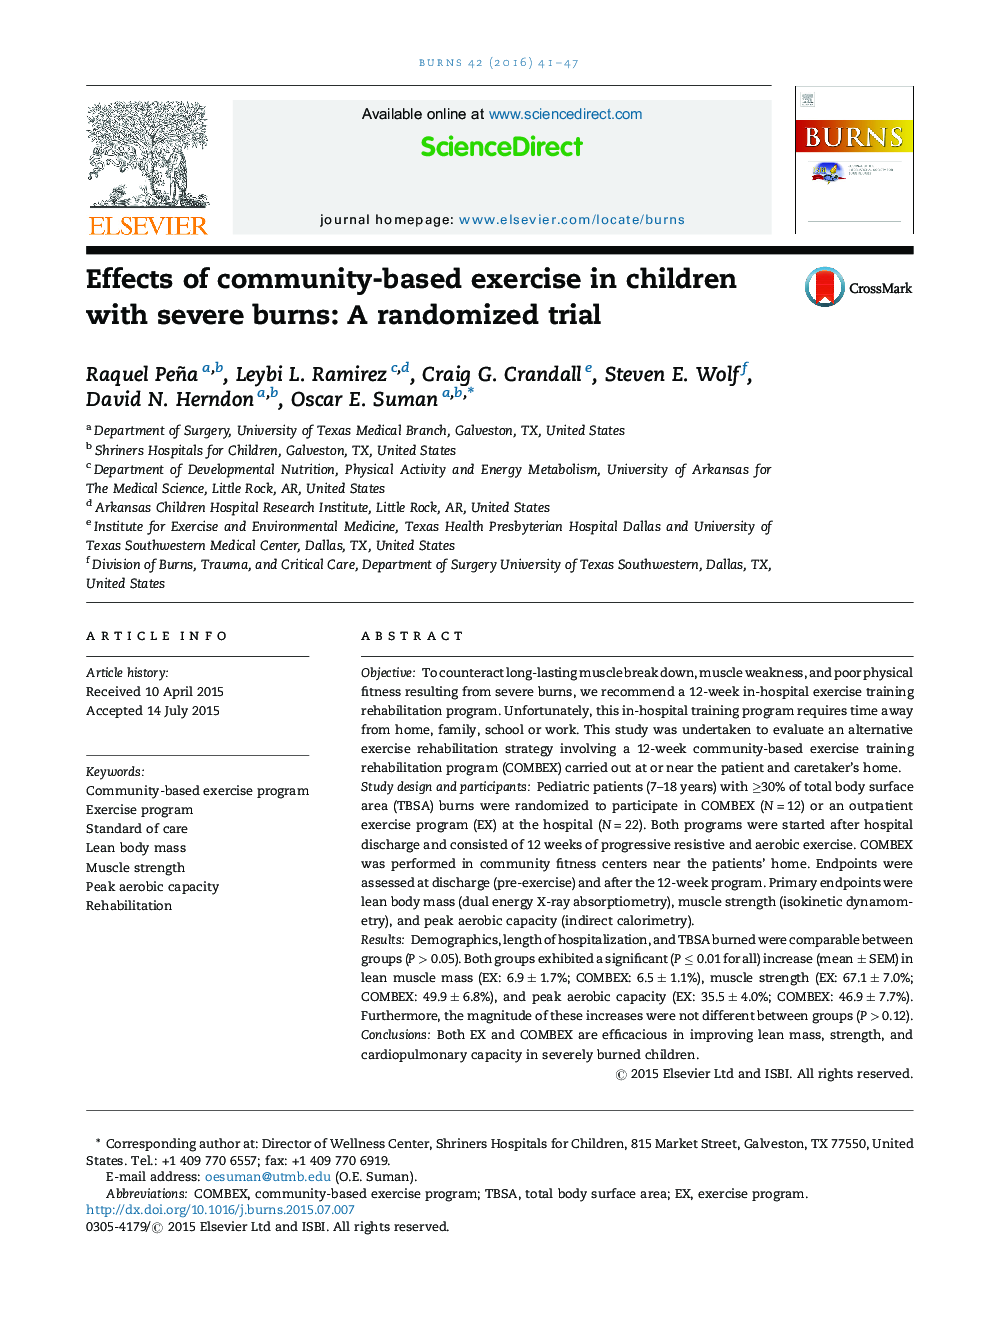 اثرات ورزش مبتنی بر جامعه در کودکان مبتلا به سوختگی شدید: یک مطالعه تصادفی